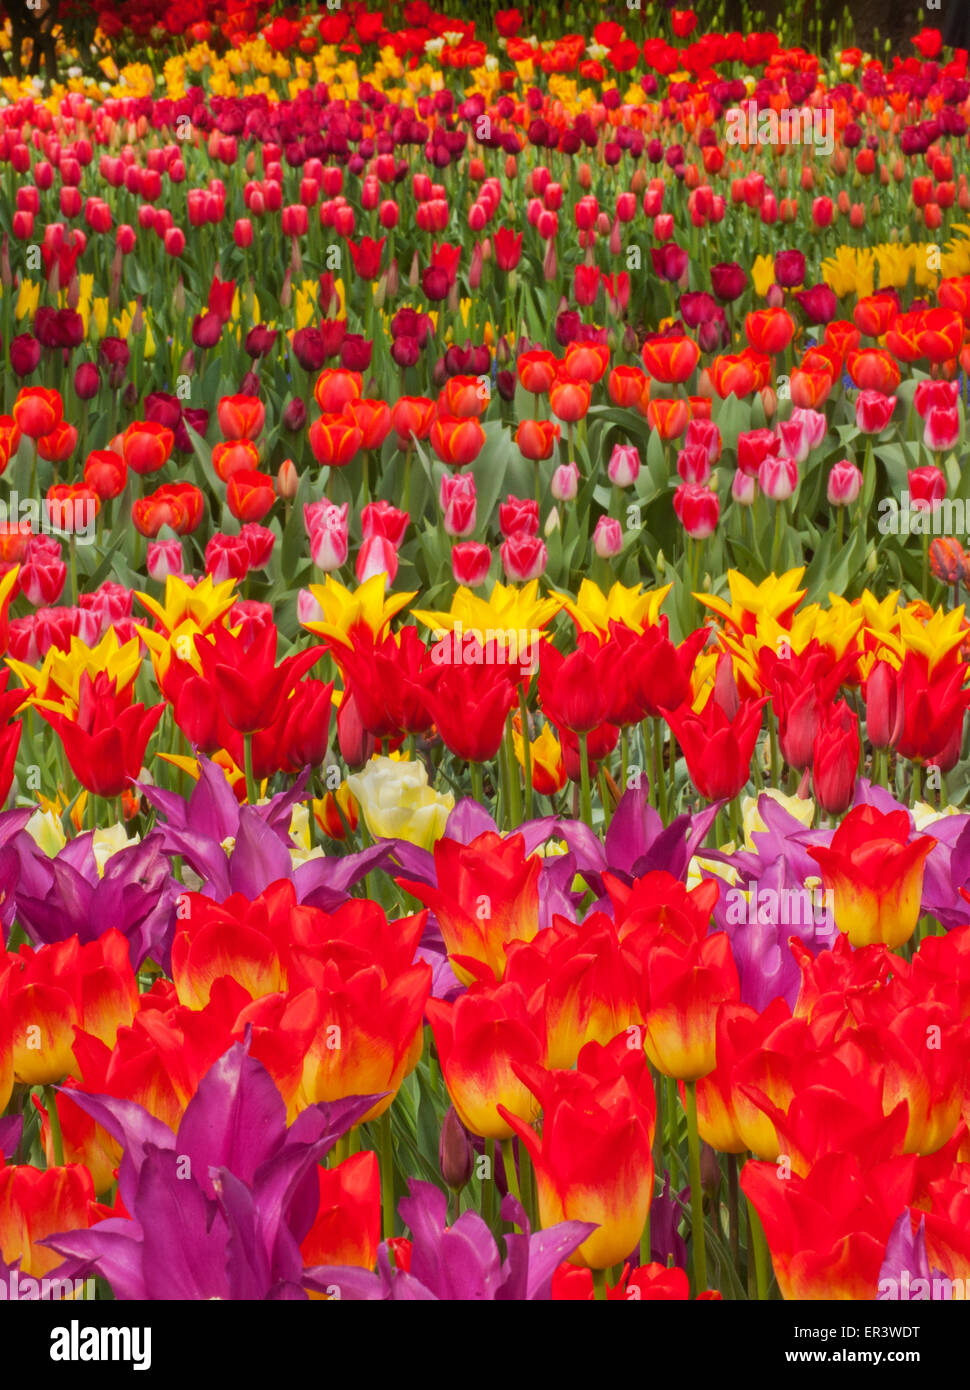 Annual Skagit Valley Tulip Festival, April 2015, Extravagant tulip displays Stock Photo